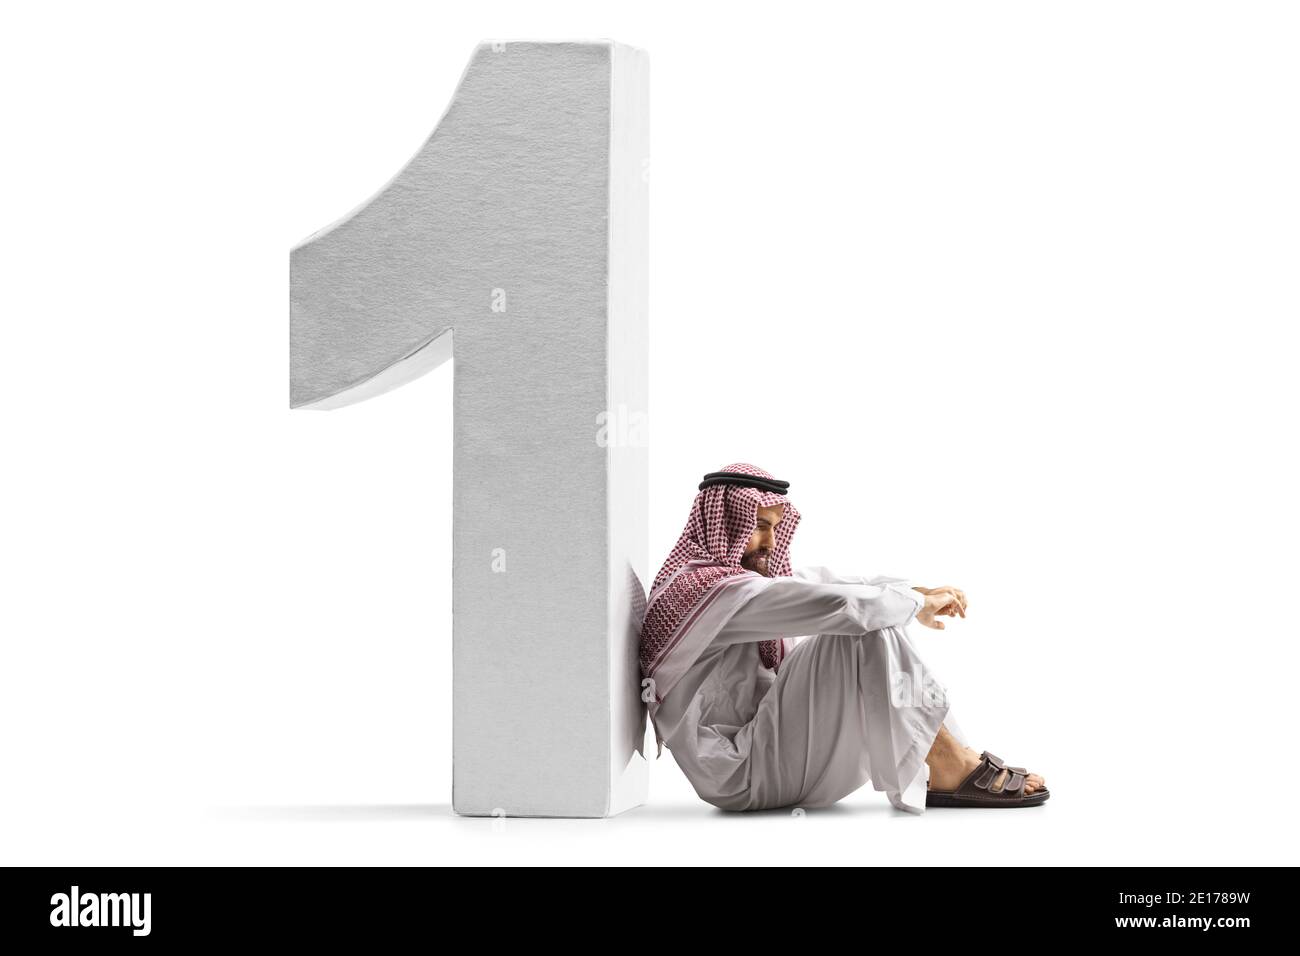 Uomo arabo saudita pensivo seduto sul pavimento e appoggiato su un numero uno isolato su sfondo bianco Foto Stock